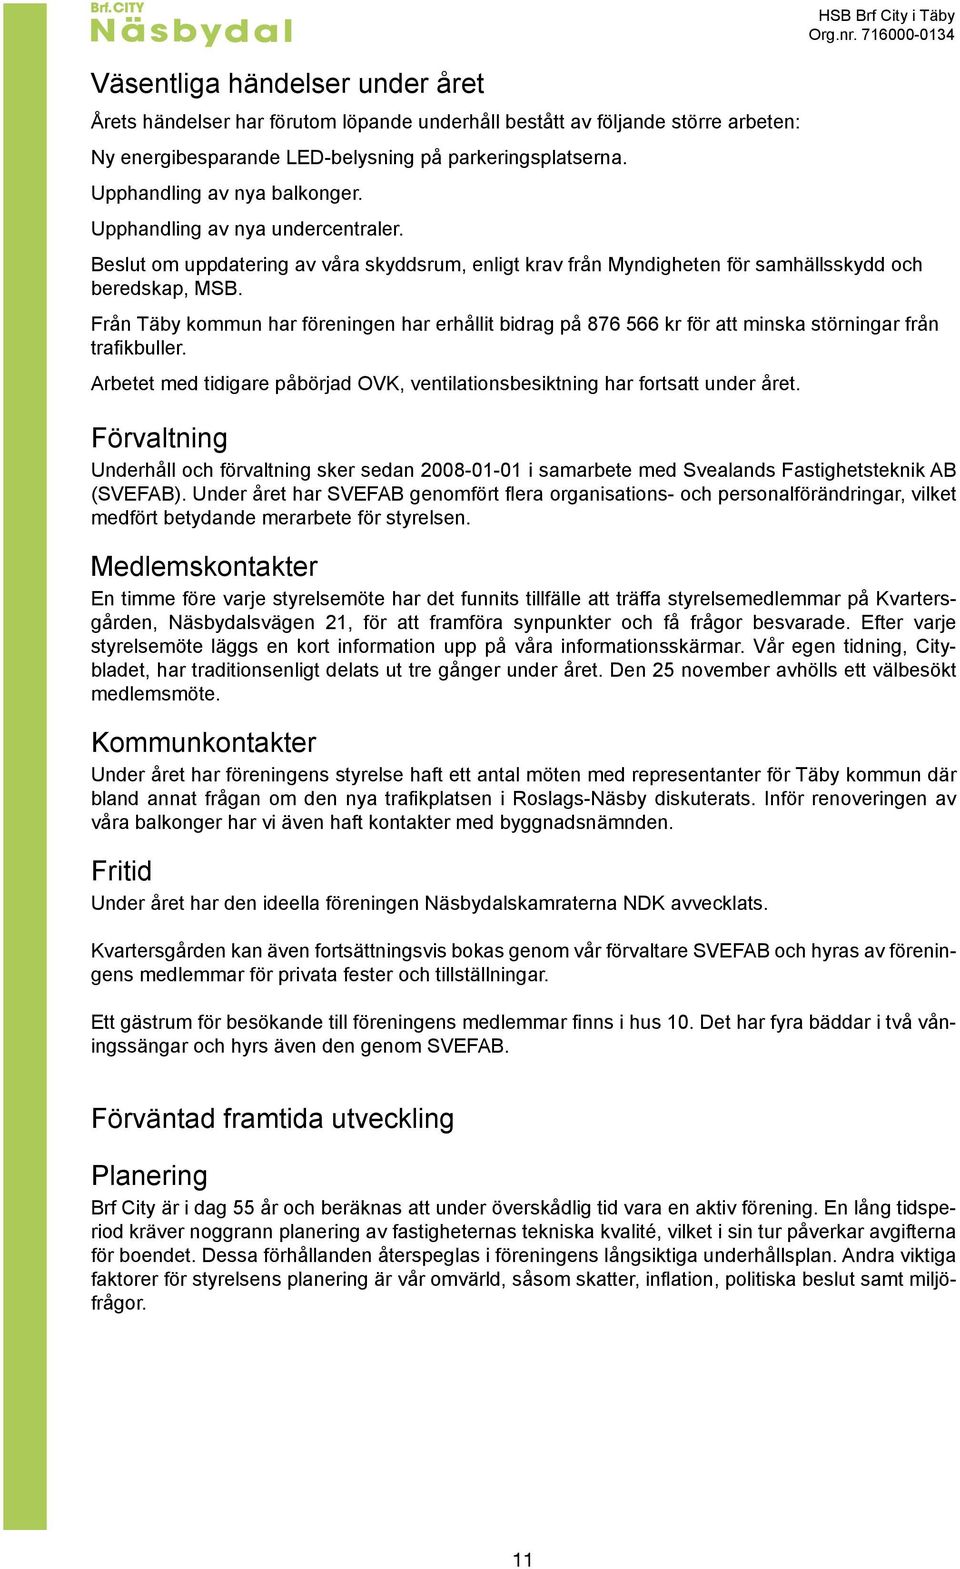 Från Täby kommun har föreningen har erhållit bidrag på 876 566 kr för att minska störningar från trafikbuller. Arbetet med tidigare påbörjad OVK, ventilationsbesiktning har fortsatt under året.